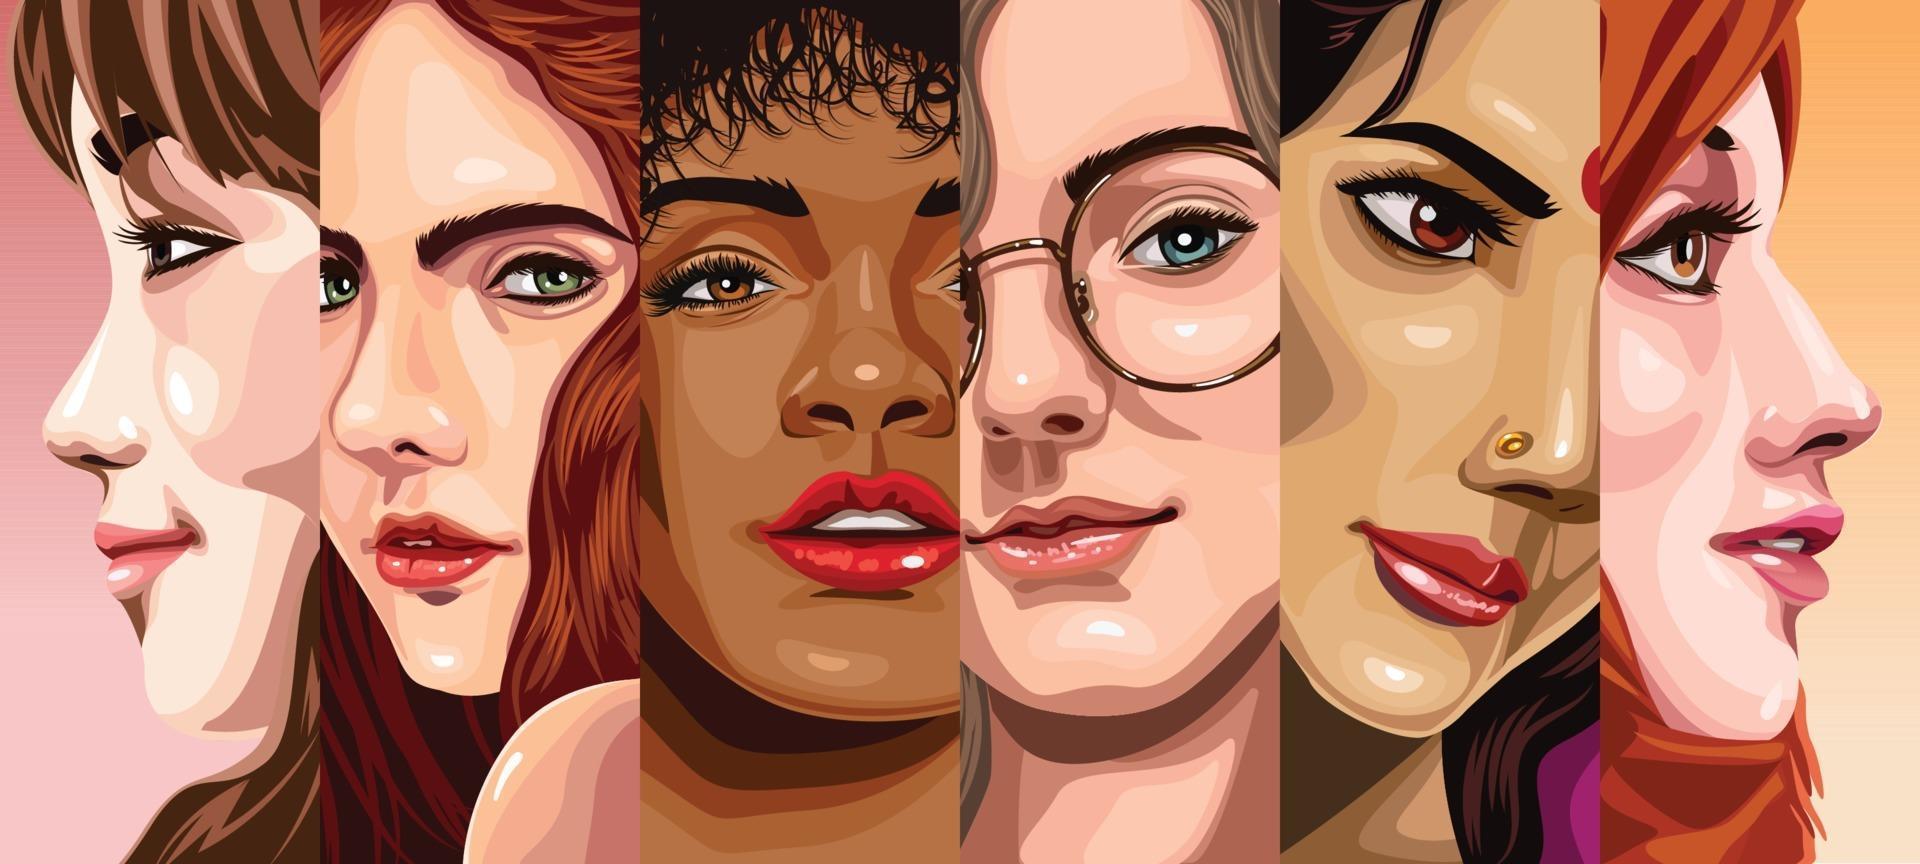 diversiteit van vrouwen over de hele wereld vector